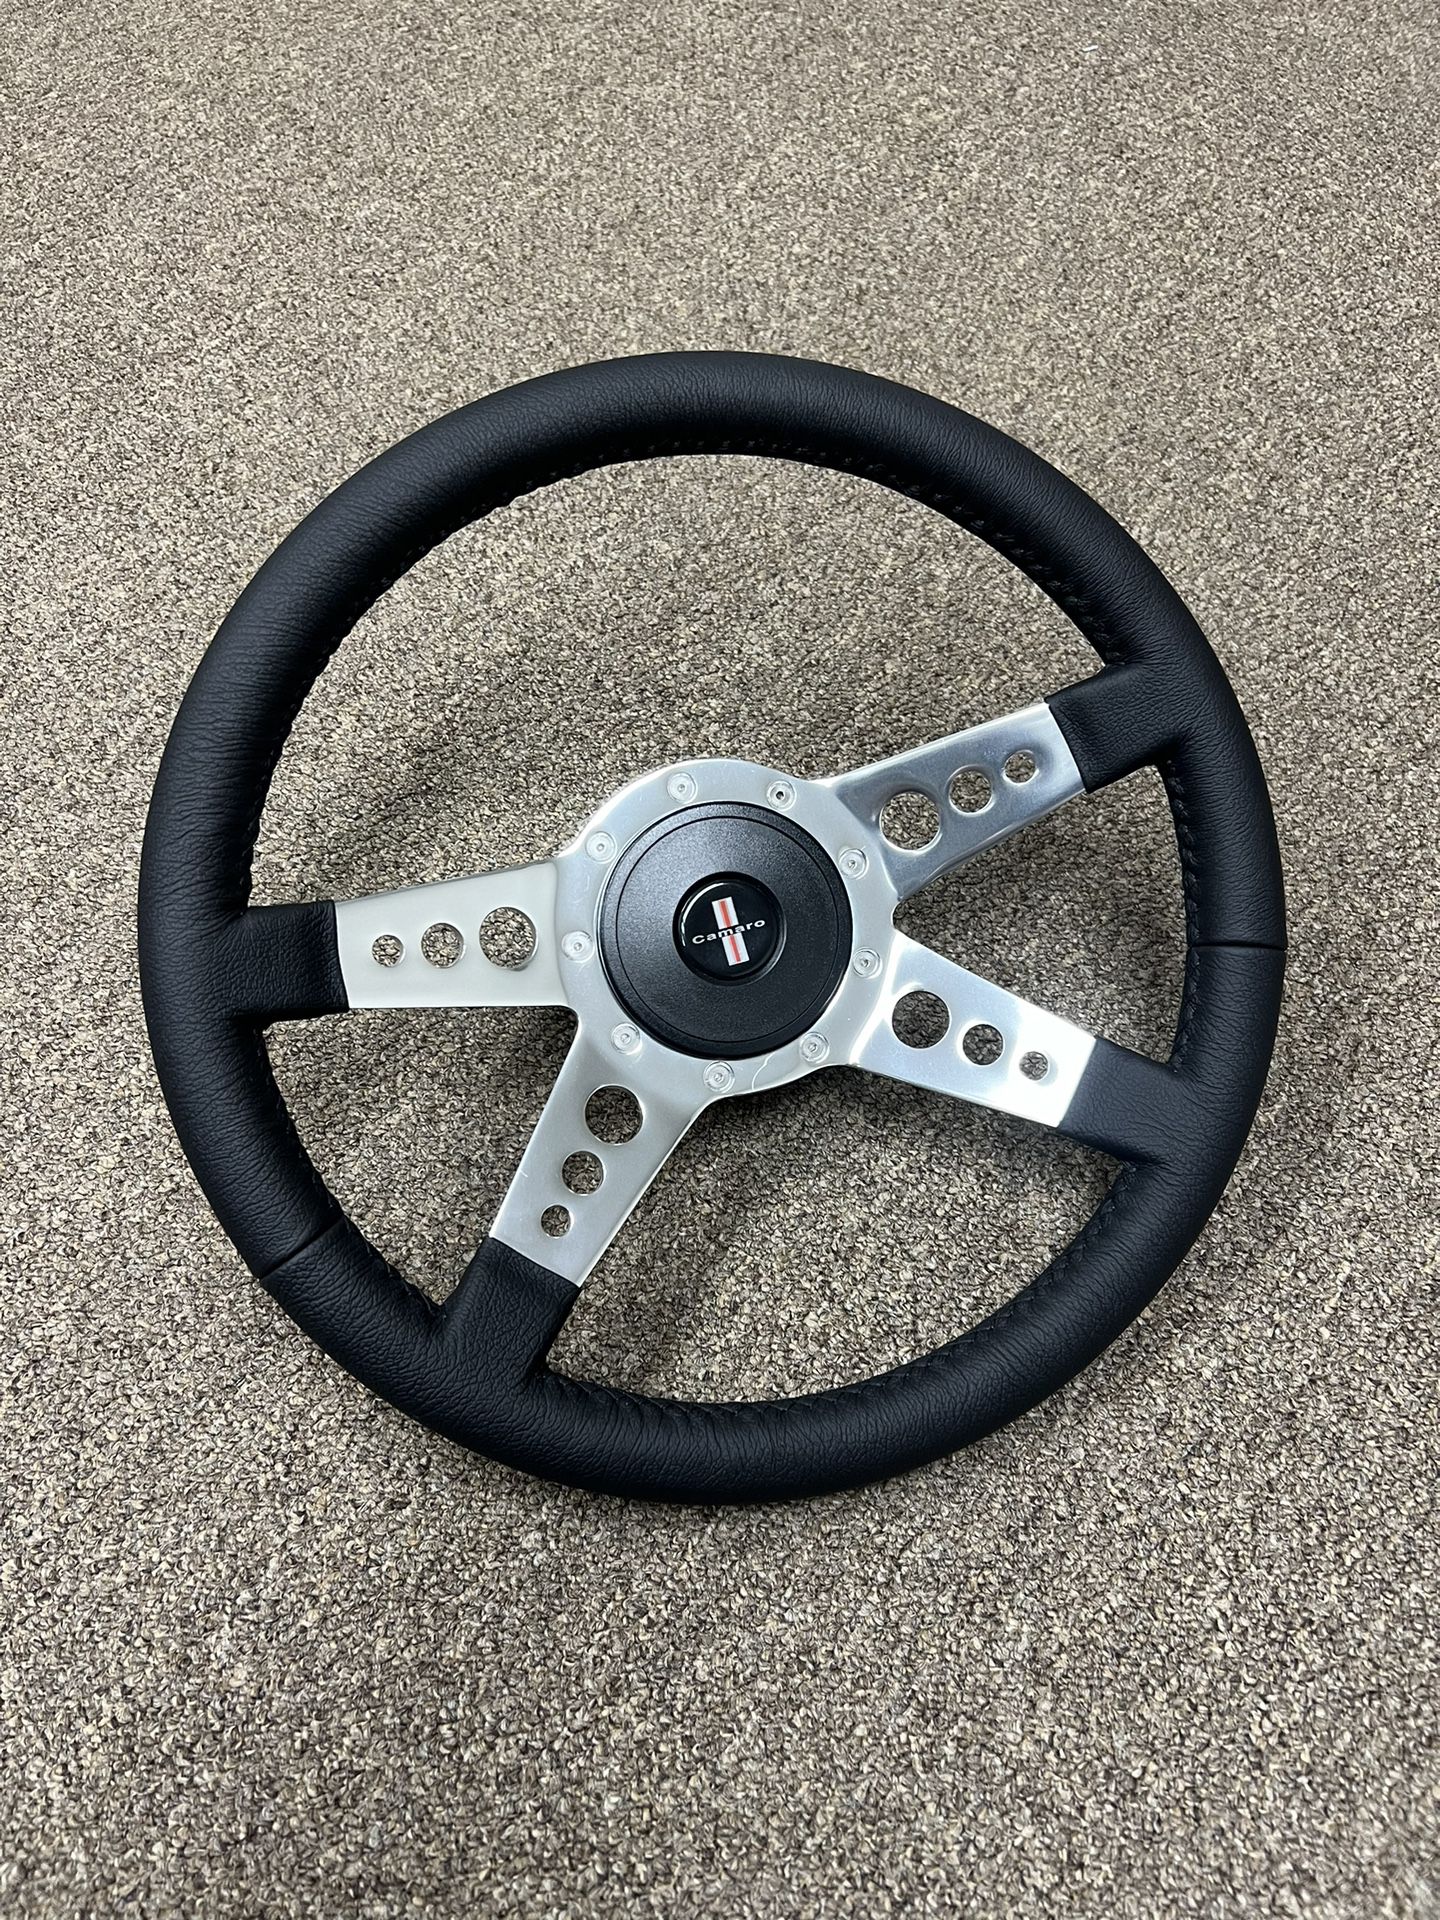 Custom Chevy Steering Wheel!Truck/Car 